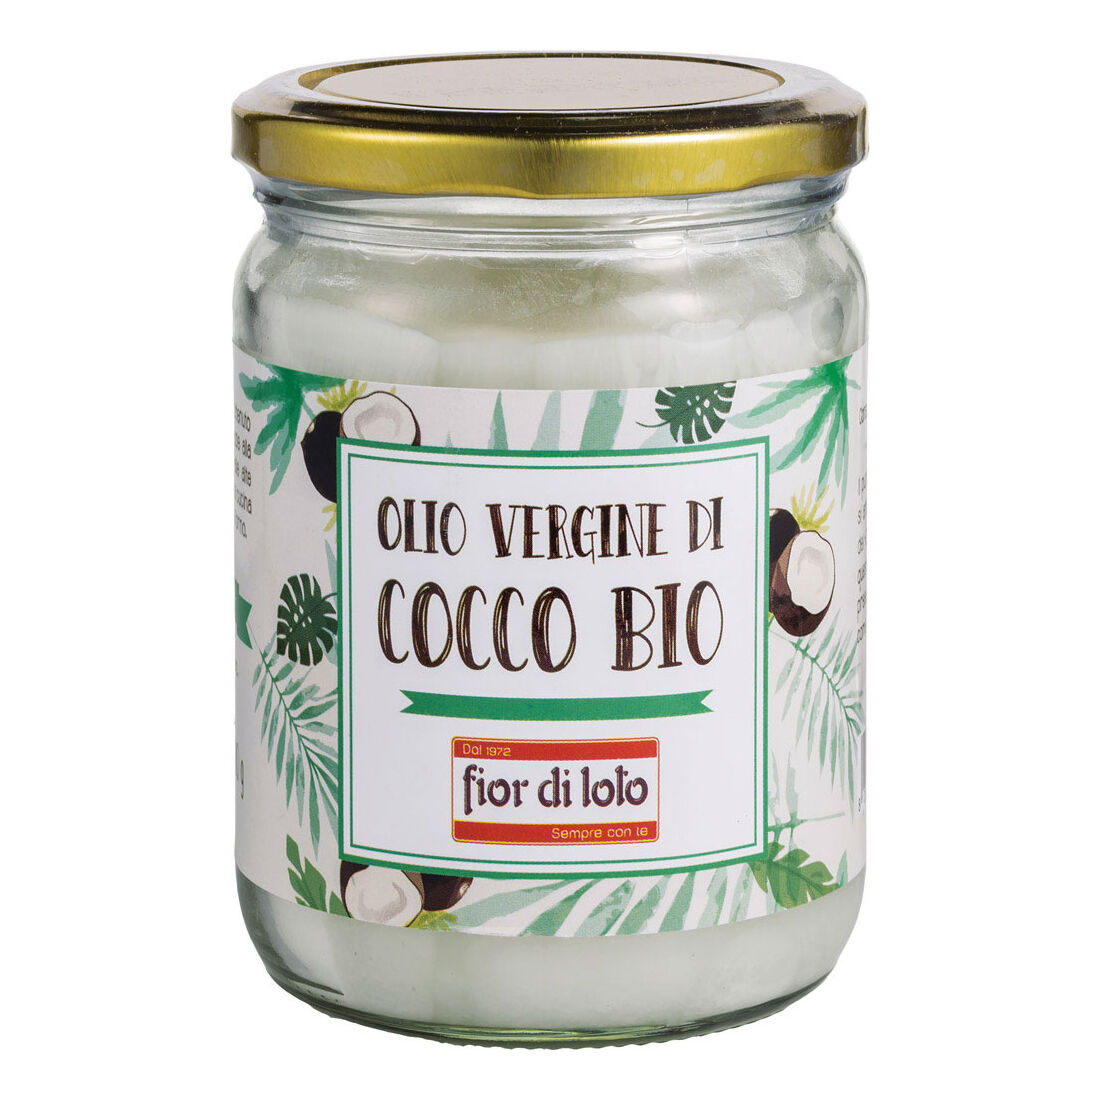 biotobio fior di loto olio vergine di cocco bio 410 g